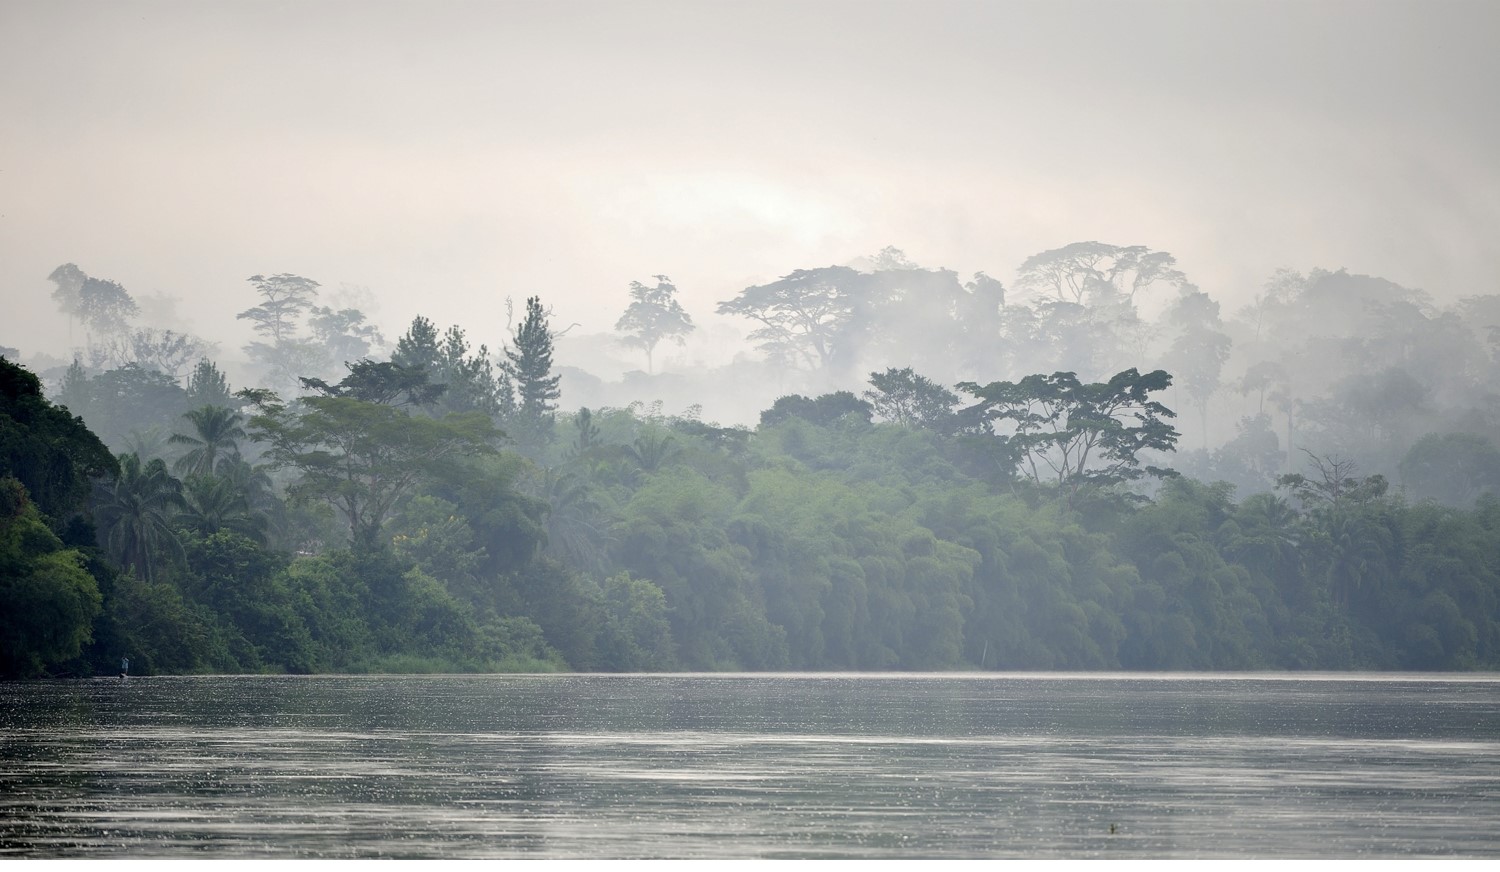 vue d'un fleuve congolais avec des arbres au bord du rivage